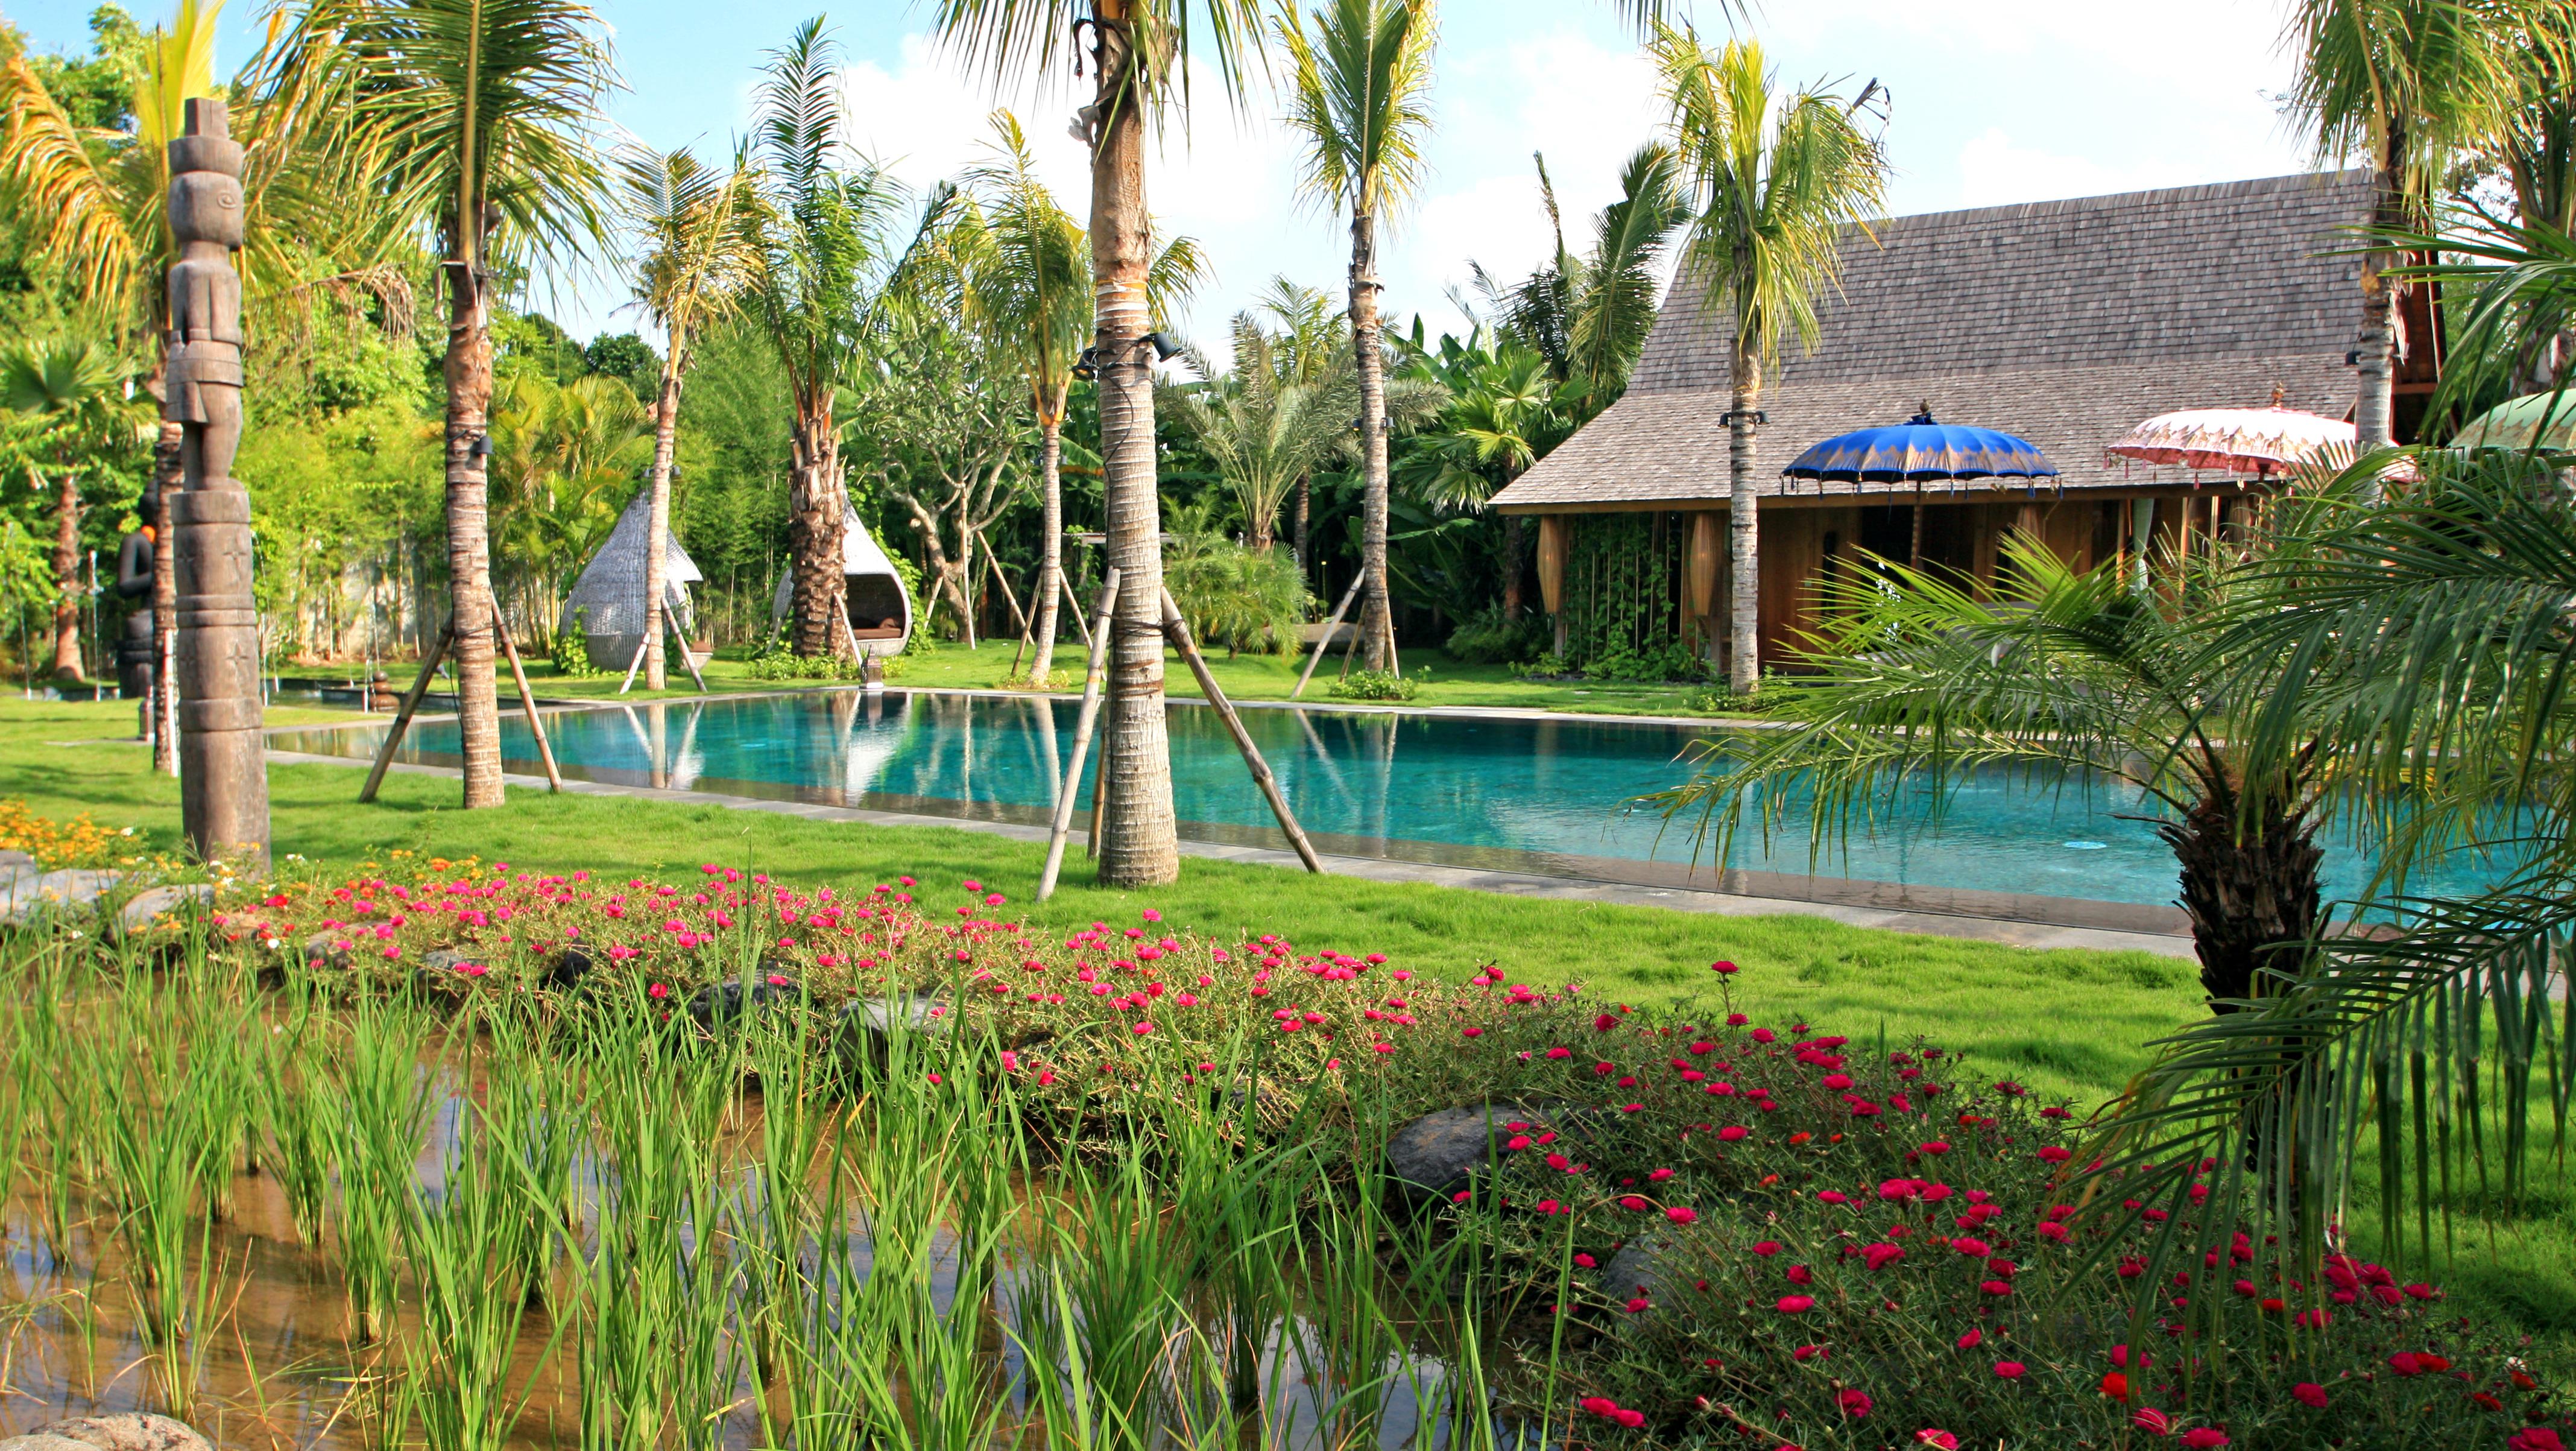  Villa  Kayu  4 Bedrooms Sleeps 5 Pool Umalas Bali